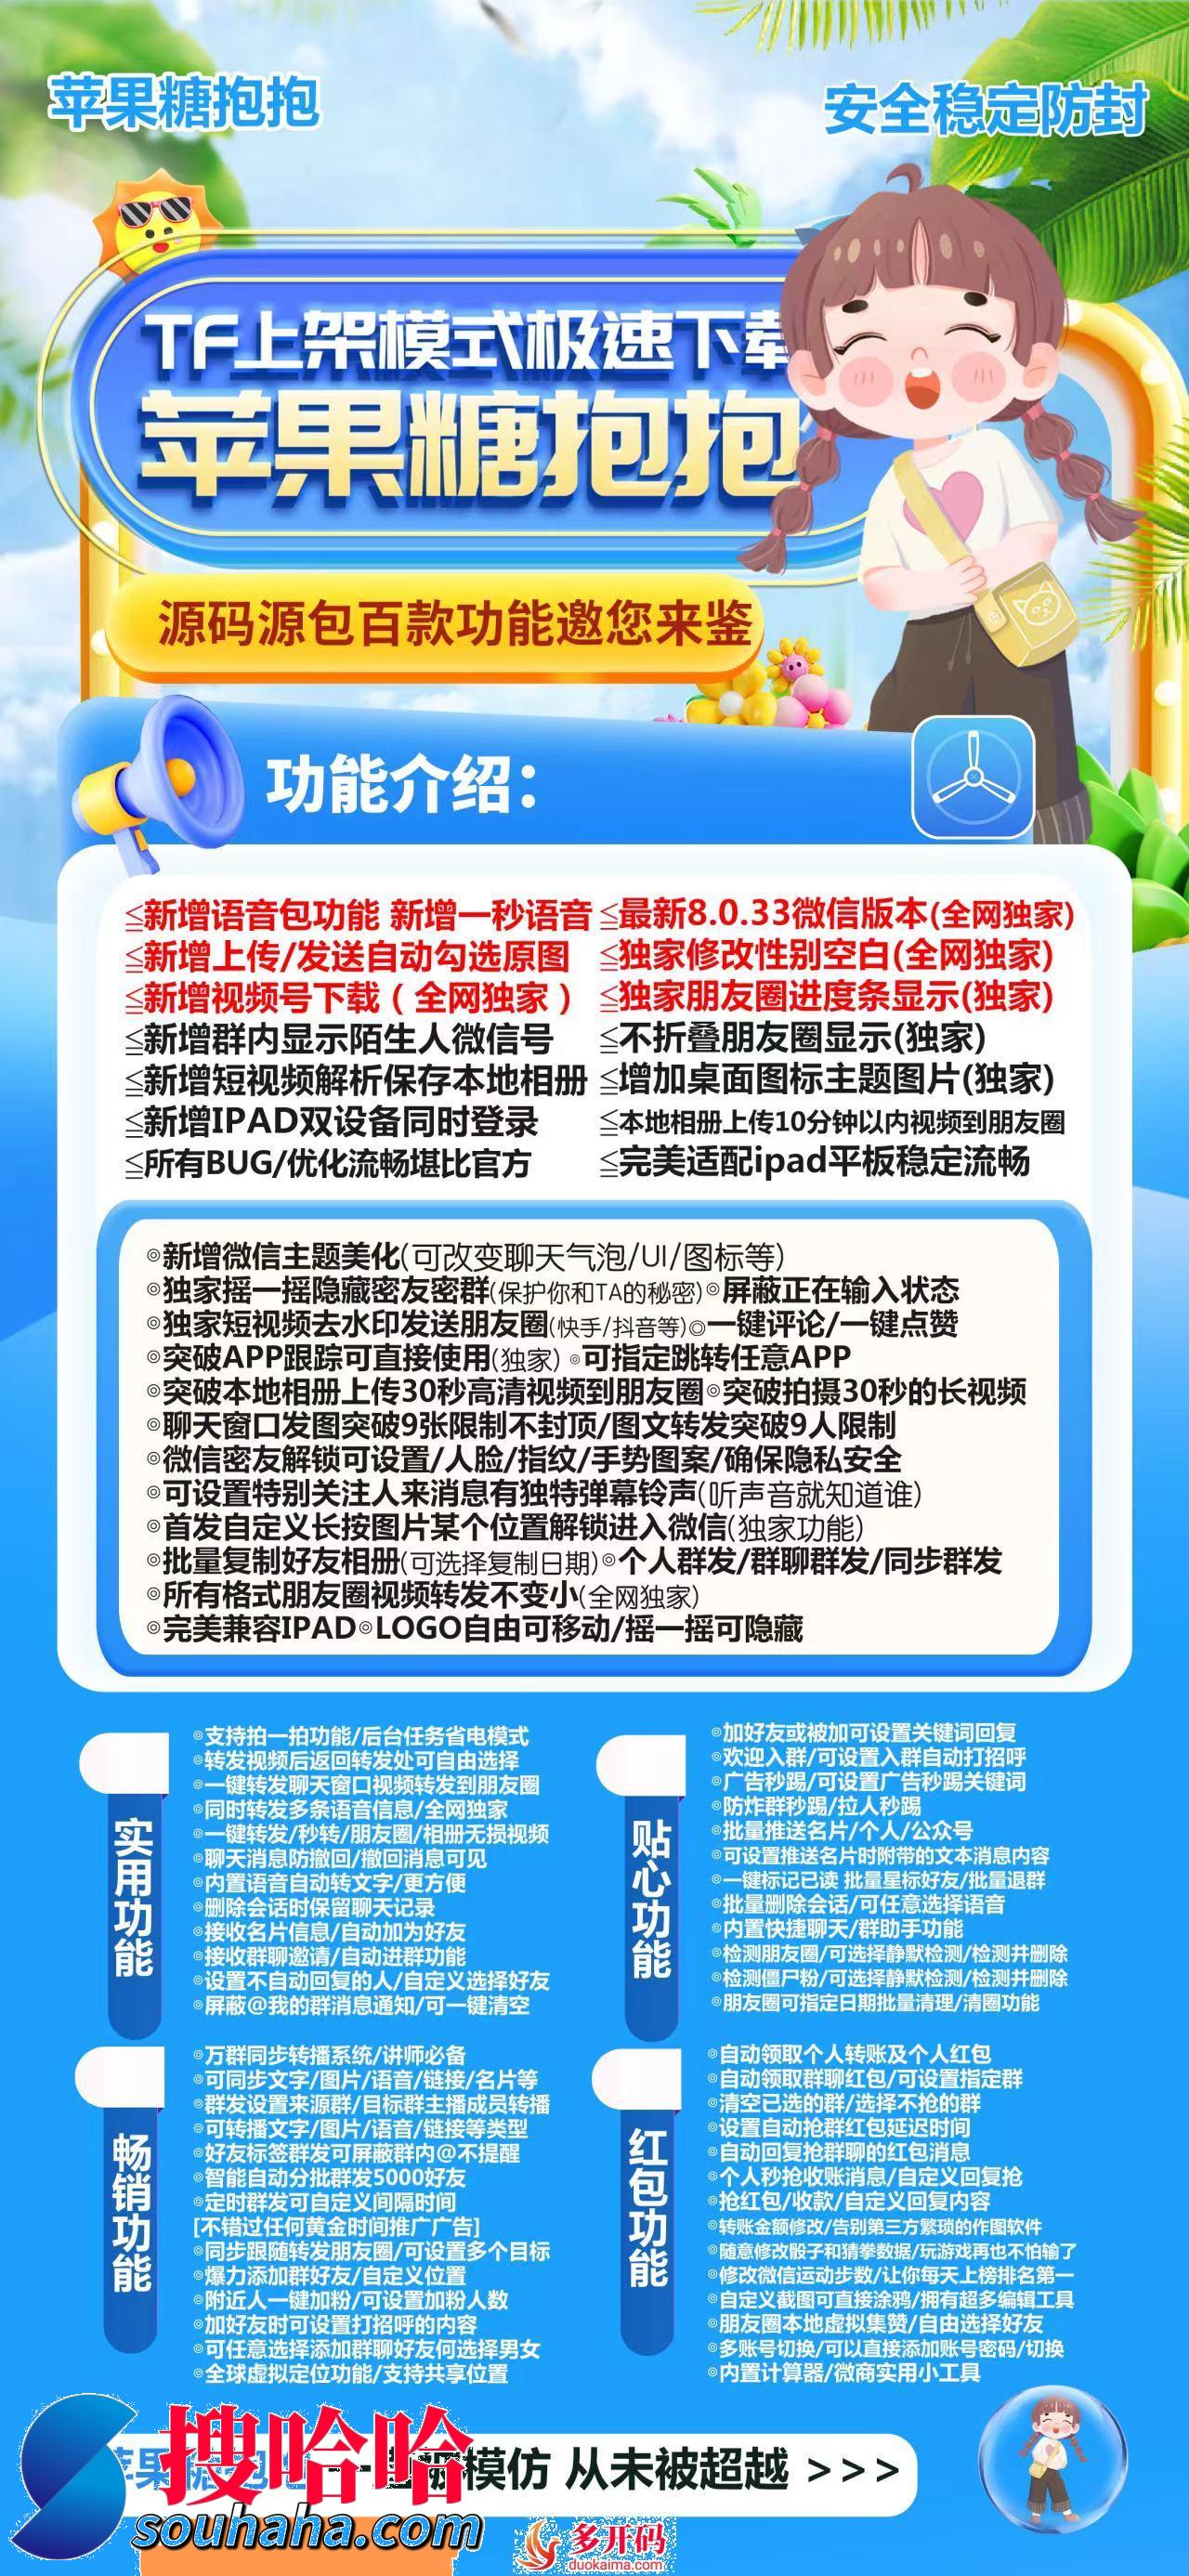 苹果糖抱抱官网下载迎用激活码软件